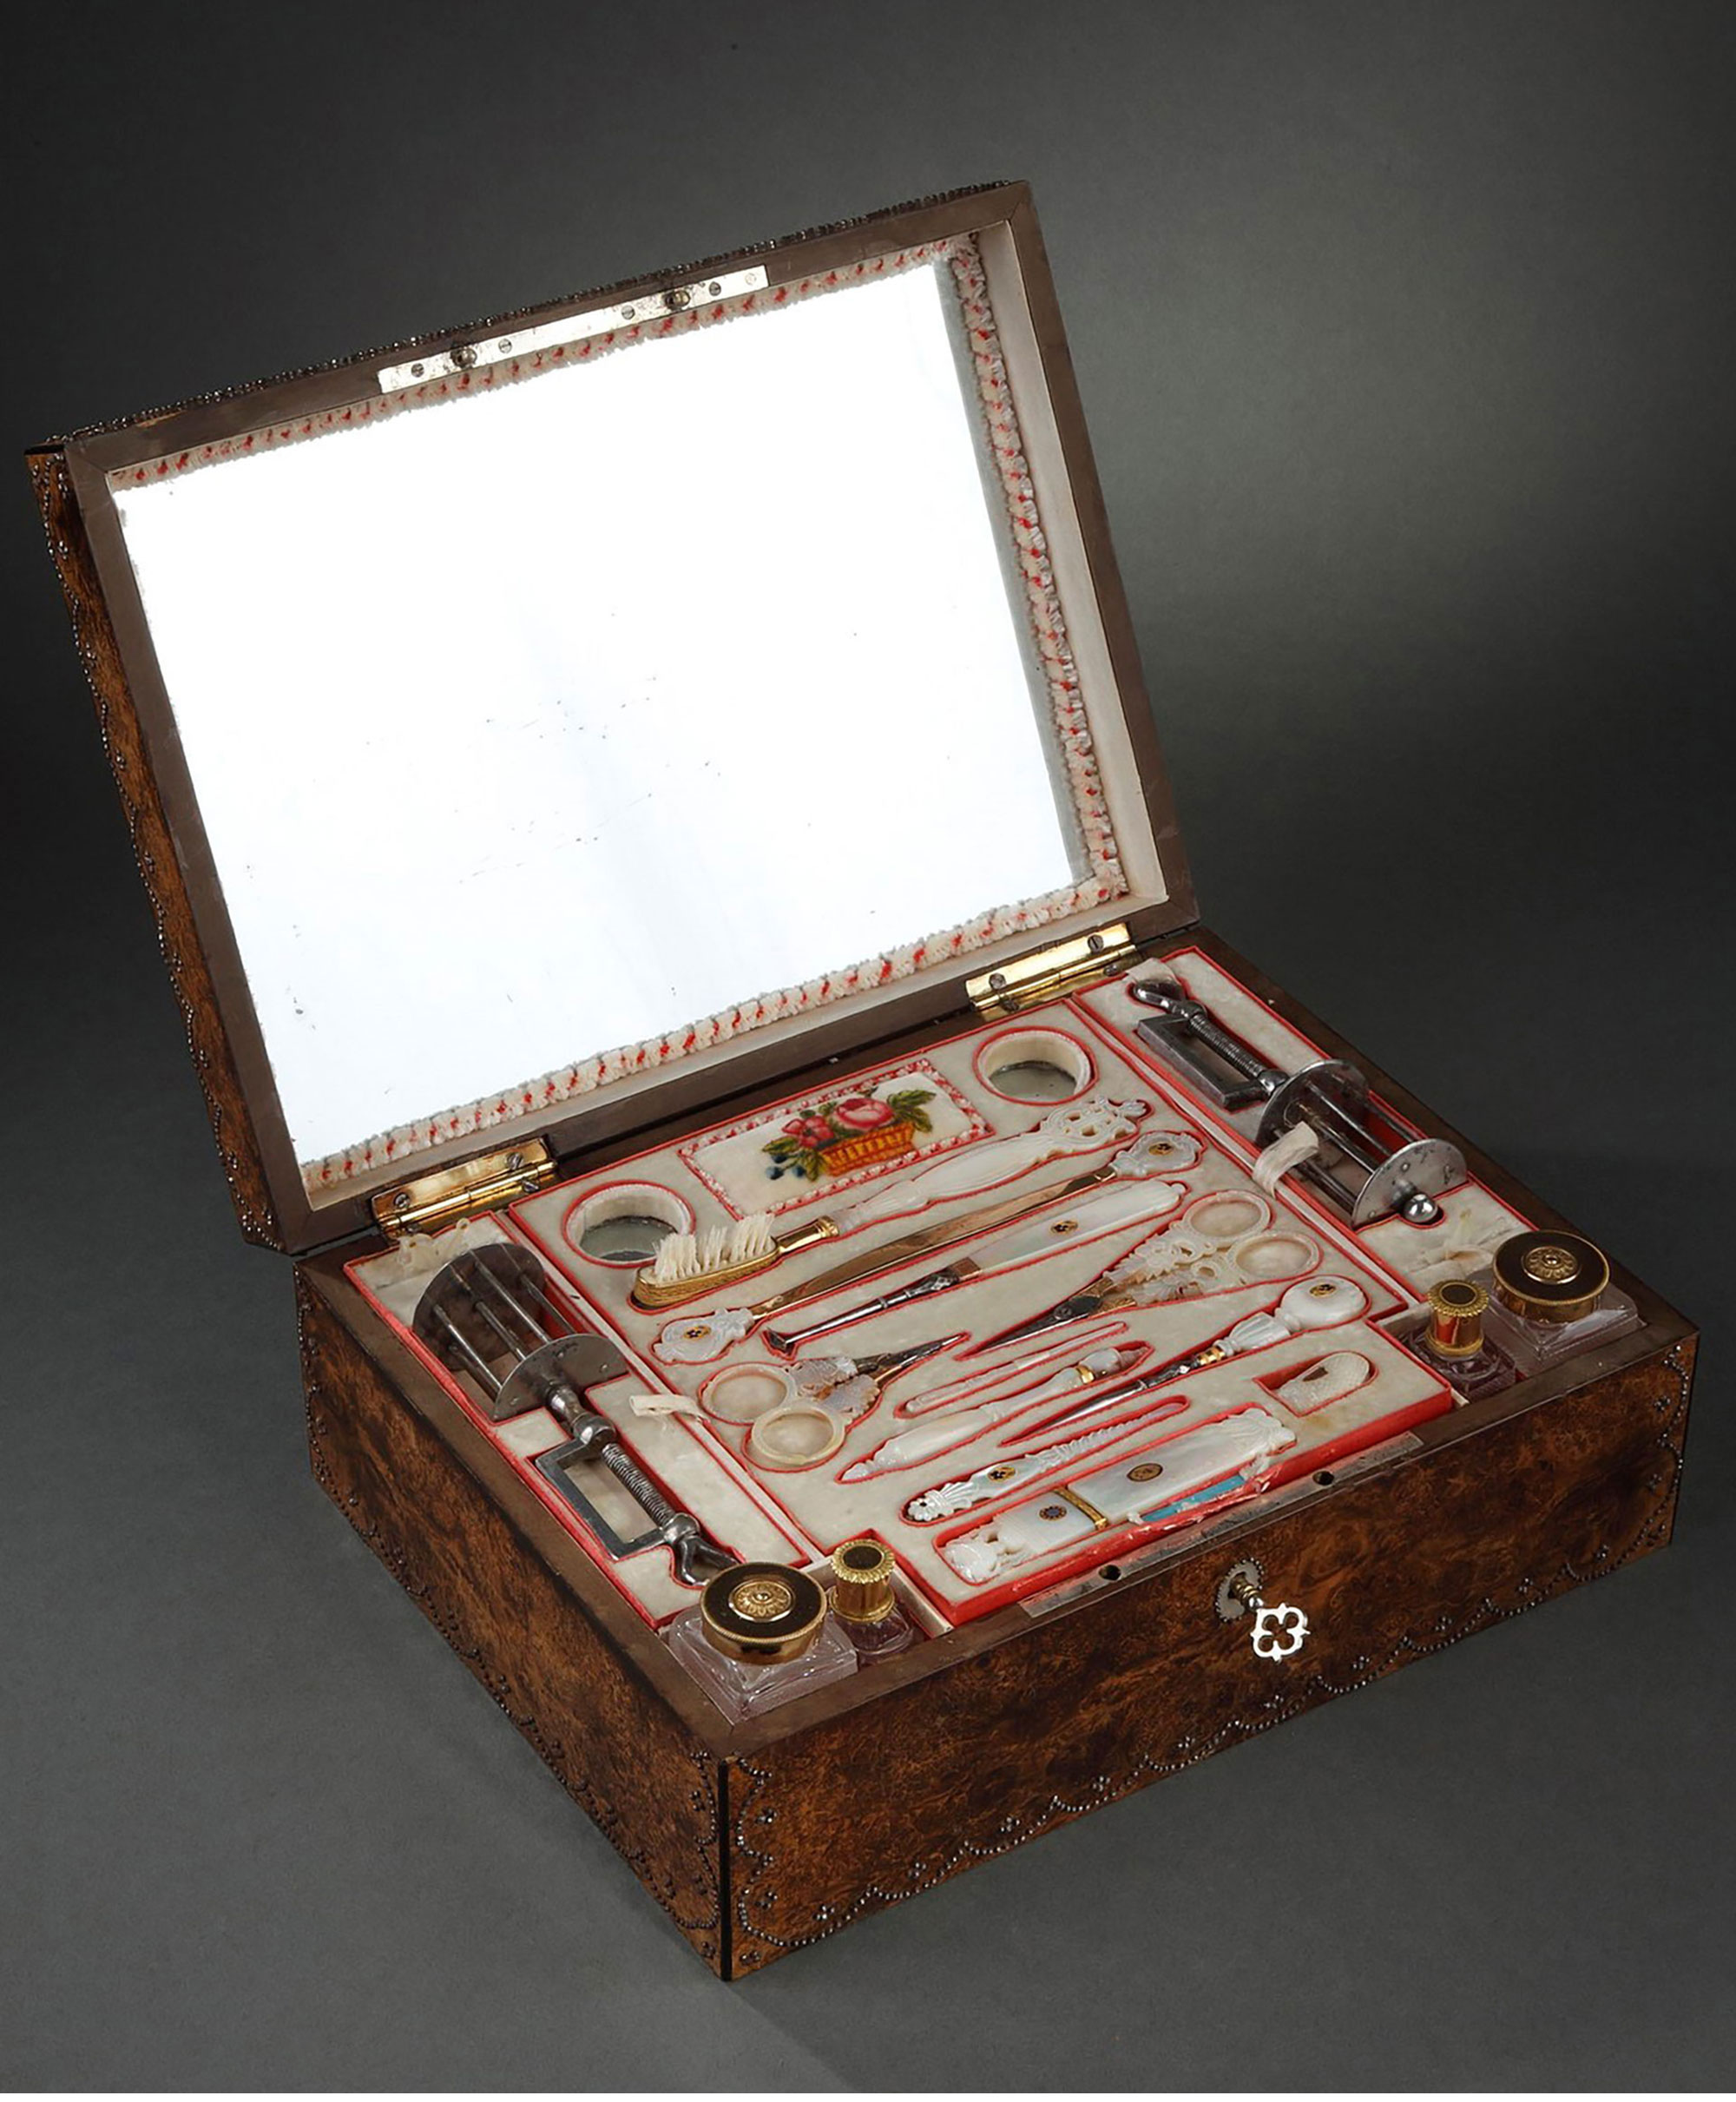 独角鹿西洋古董1820年代法国出品小爱神主题水彩画木质外盒母贝镶金雕花缝纫套件